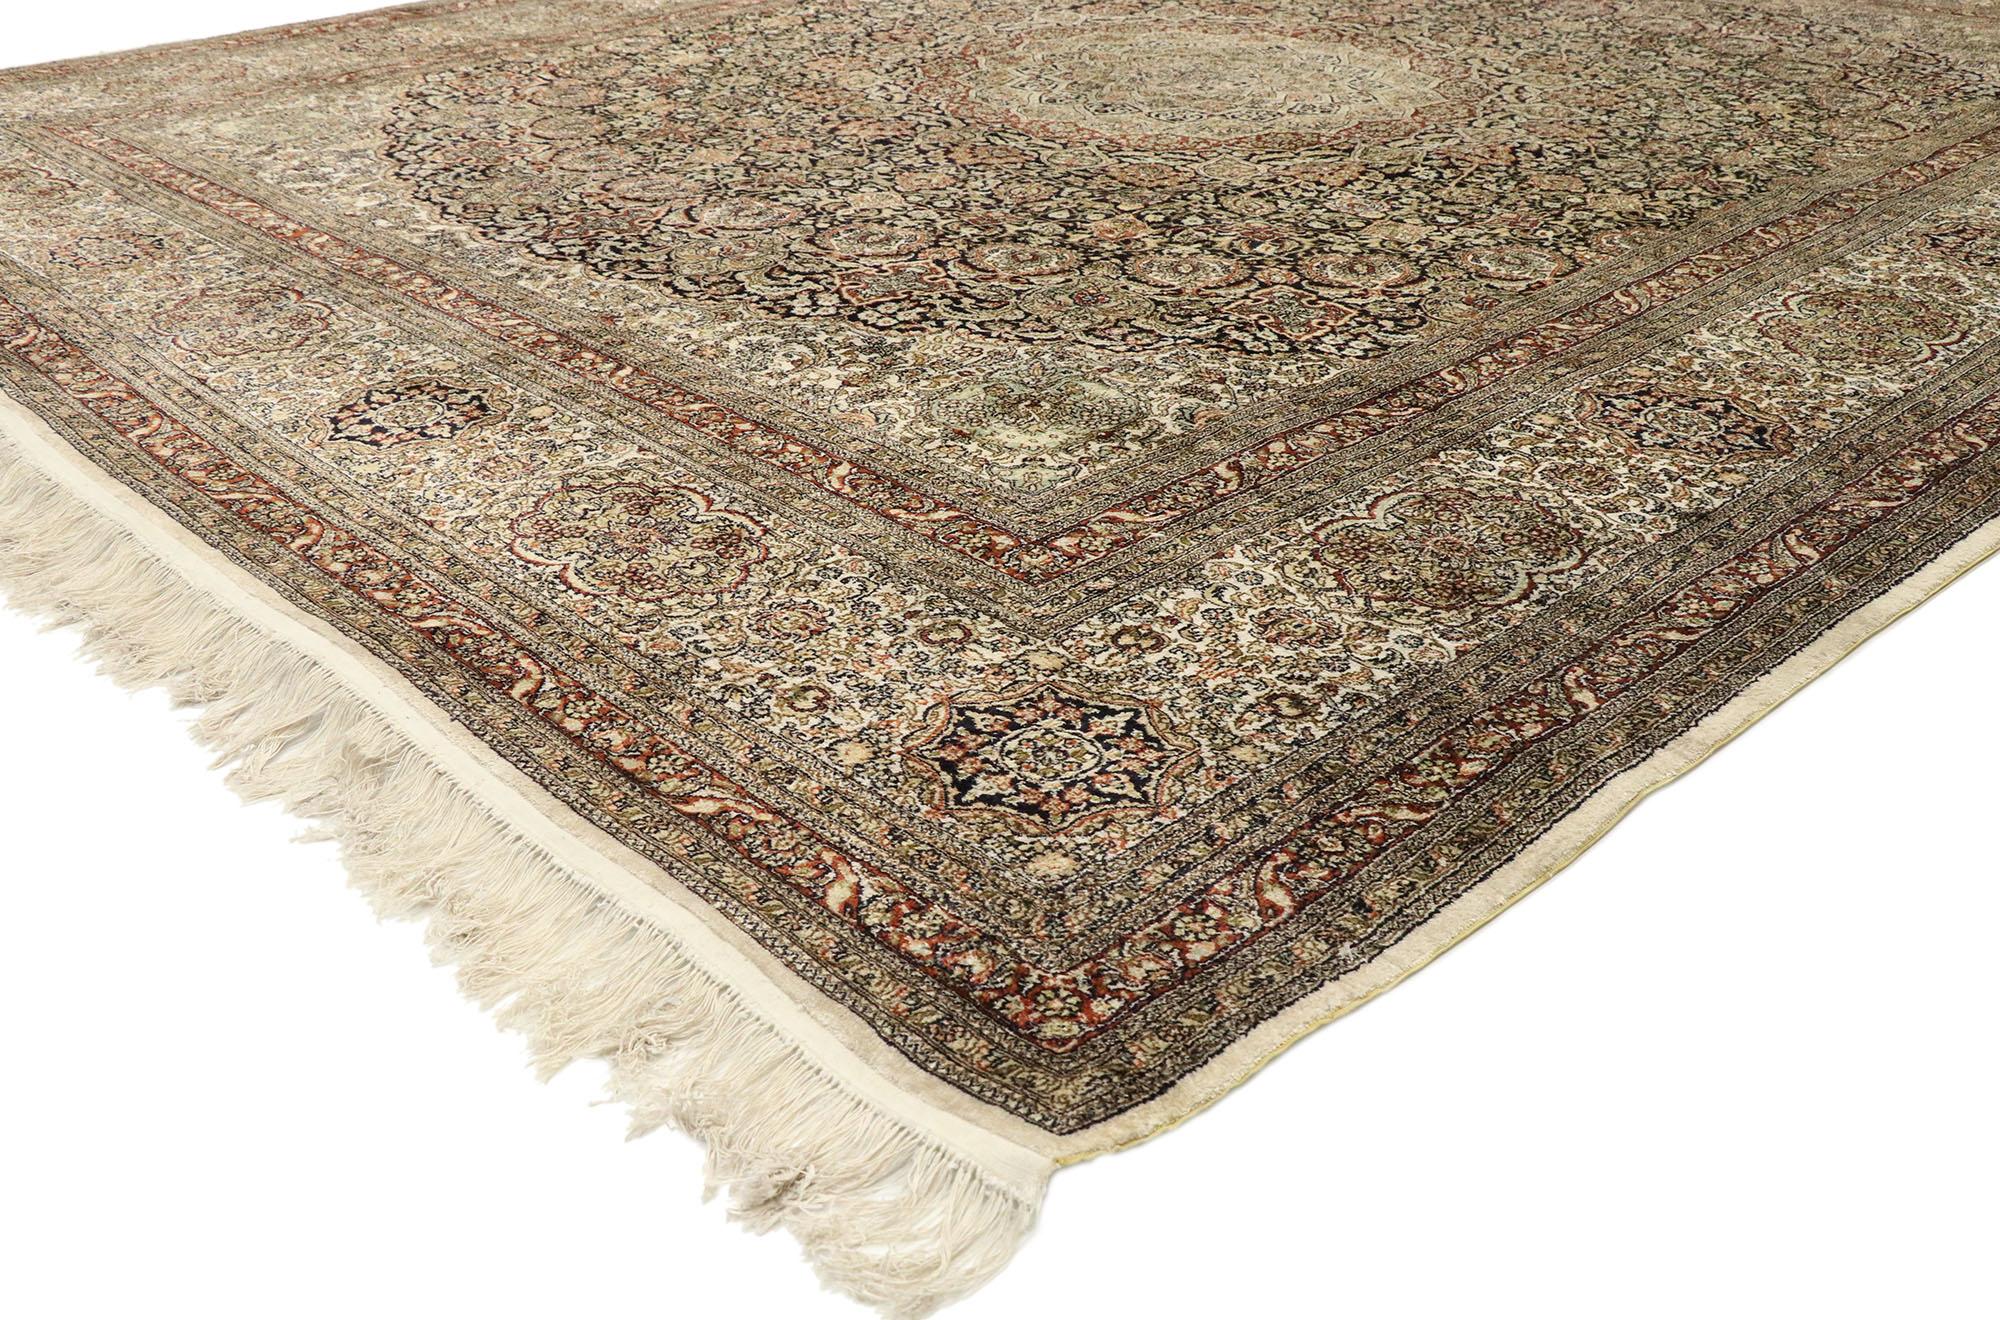 77475, tapis vintage turc en soie Hereke de style Art Nouveau Rococo. Avec ses détails ornés et sa symétrie bien équilibrée, combinés à une palette de couleurs de rêve, ce tapis en soie nouée à la main, de style vintage turc Hereke, incarne